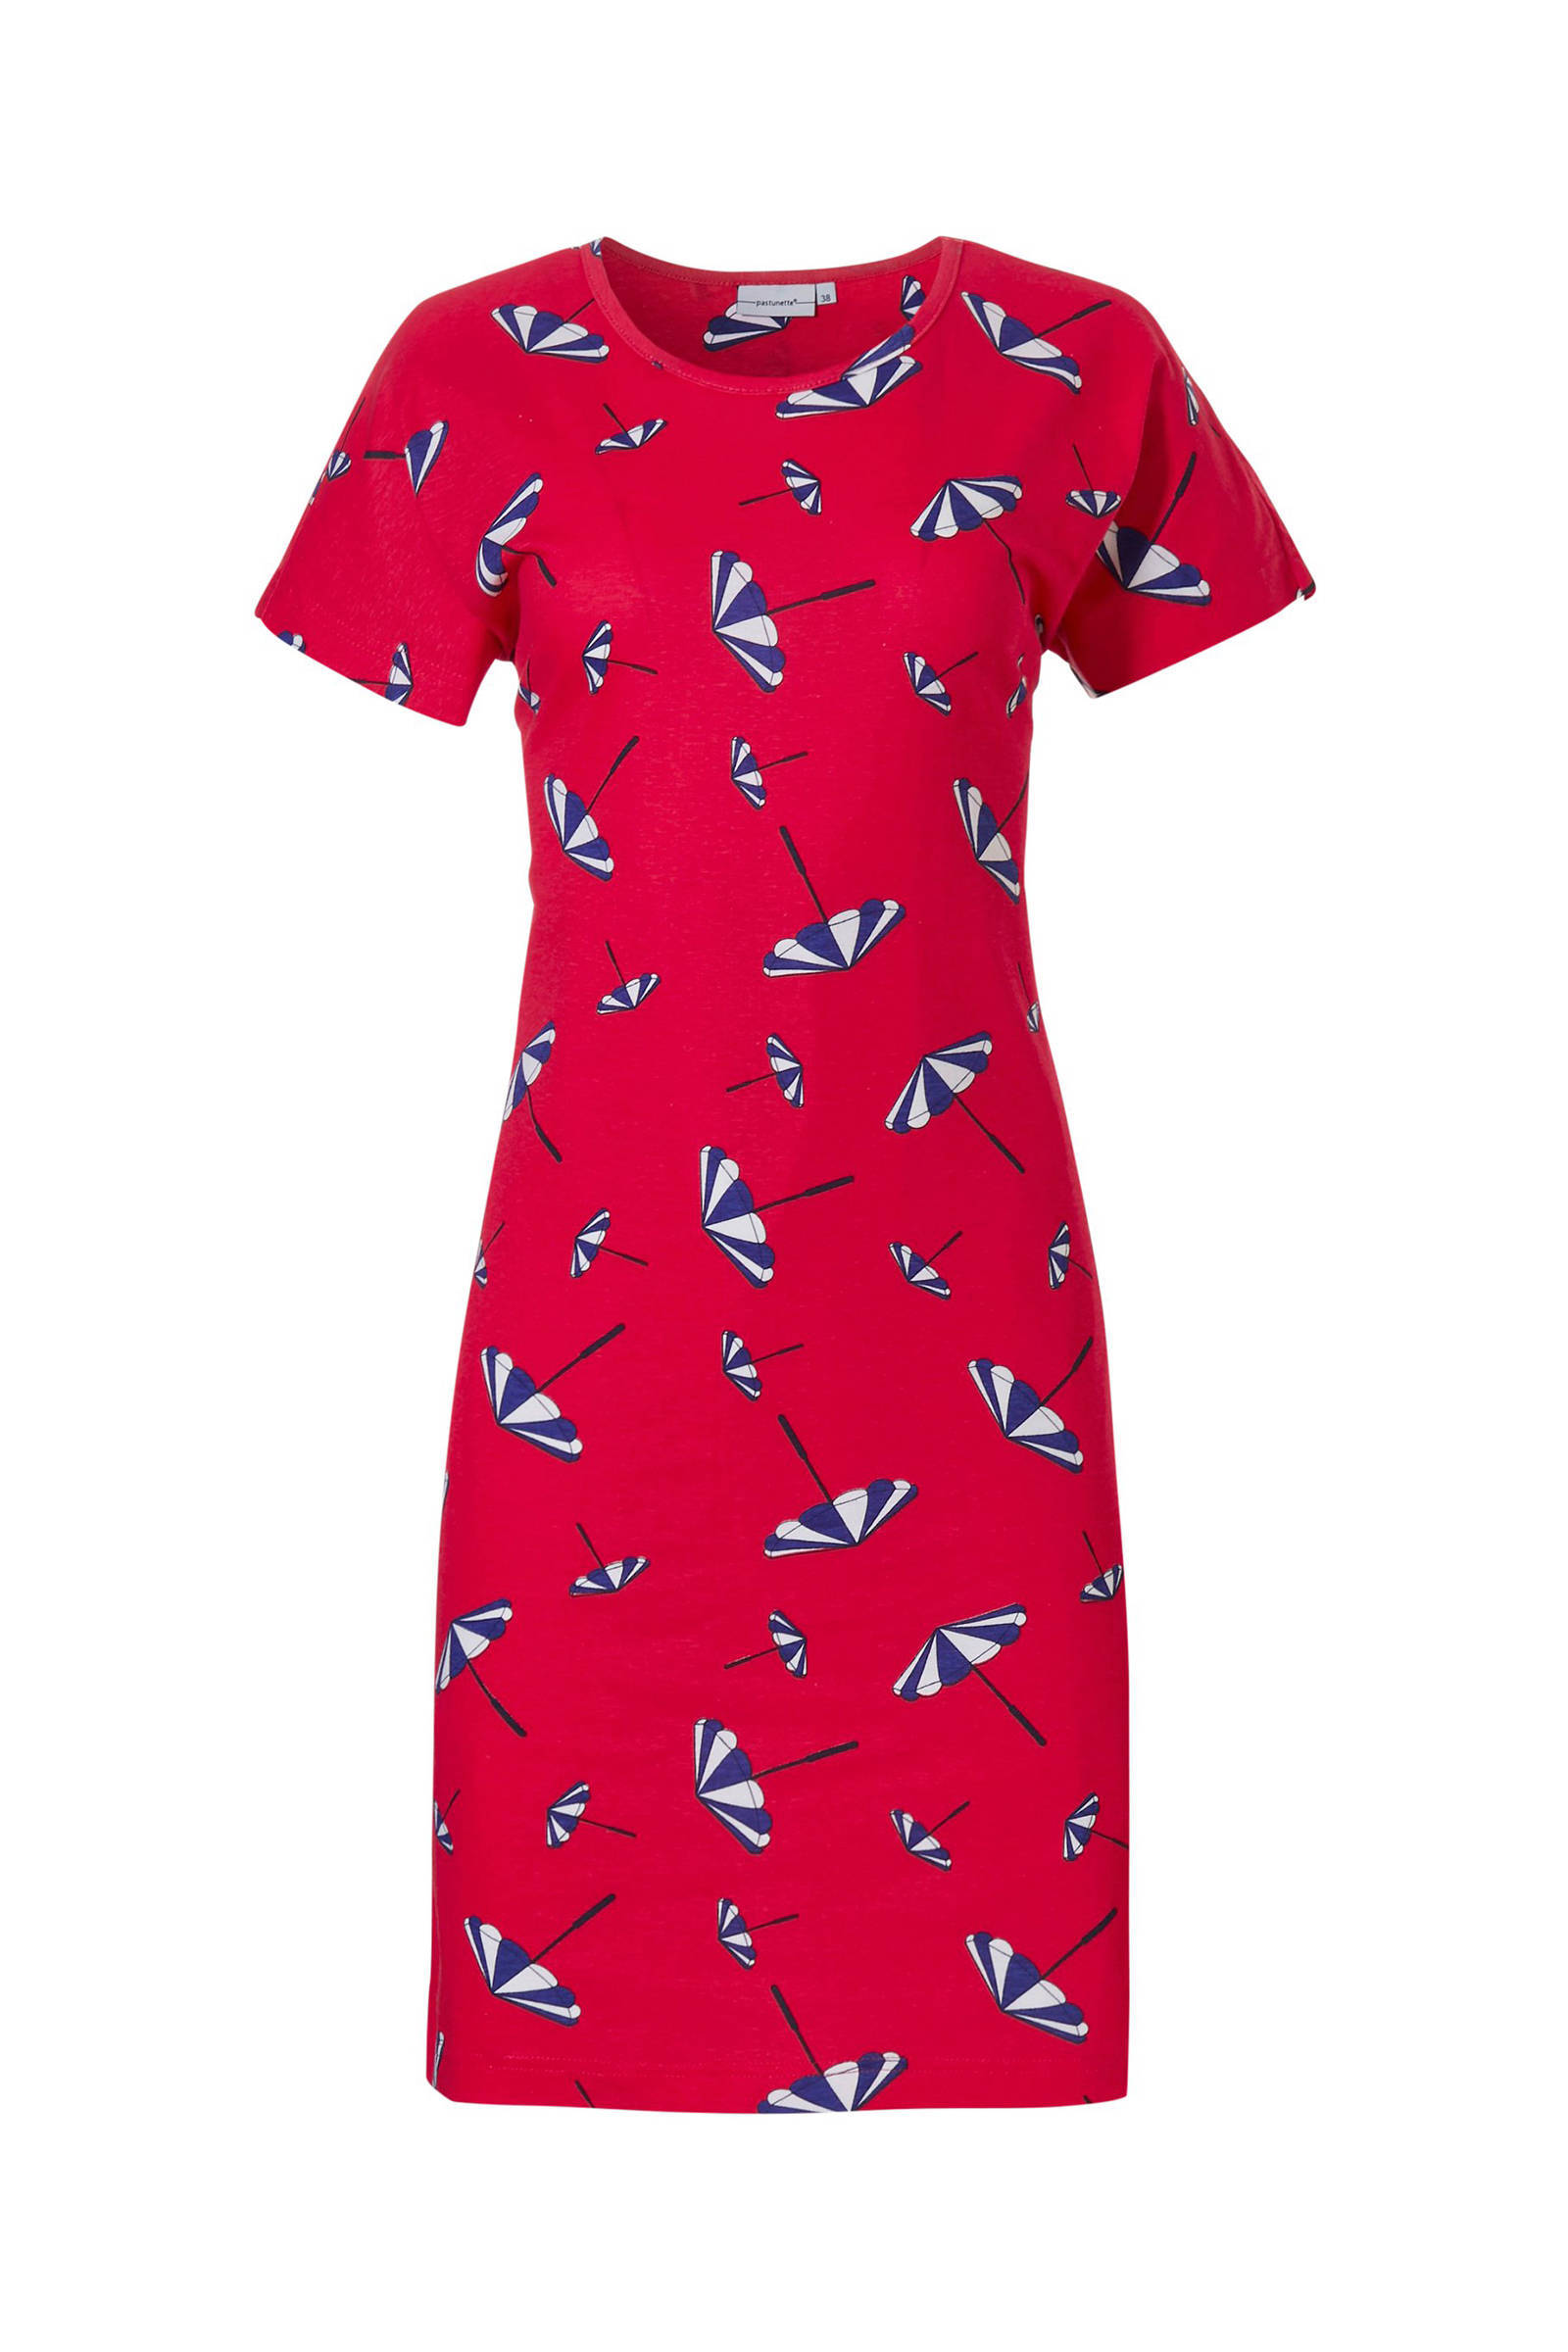 Nachthemd met all over print rood wehkamp Dames Kleding Nachtmode Nachthemden & Jurkjes 